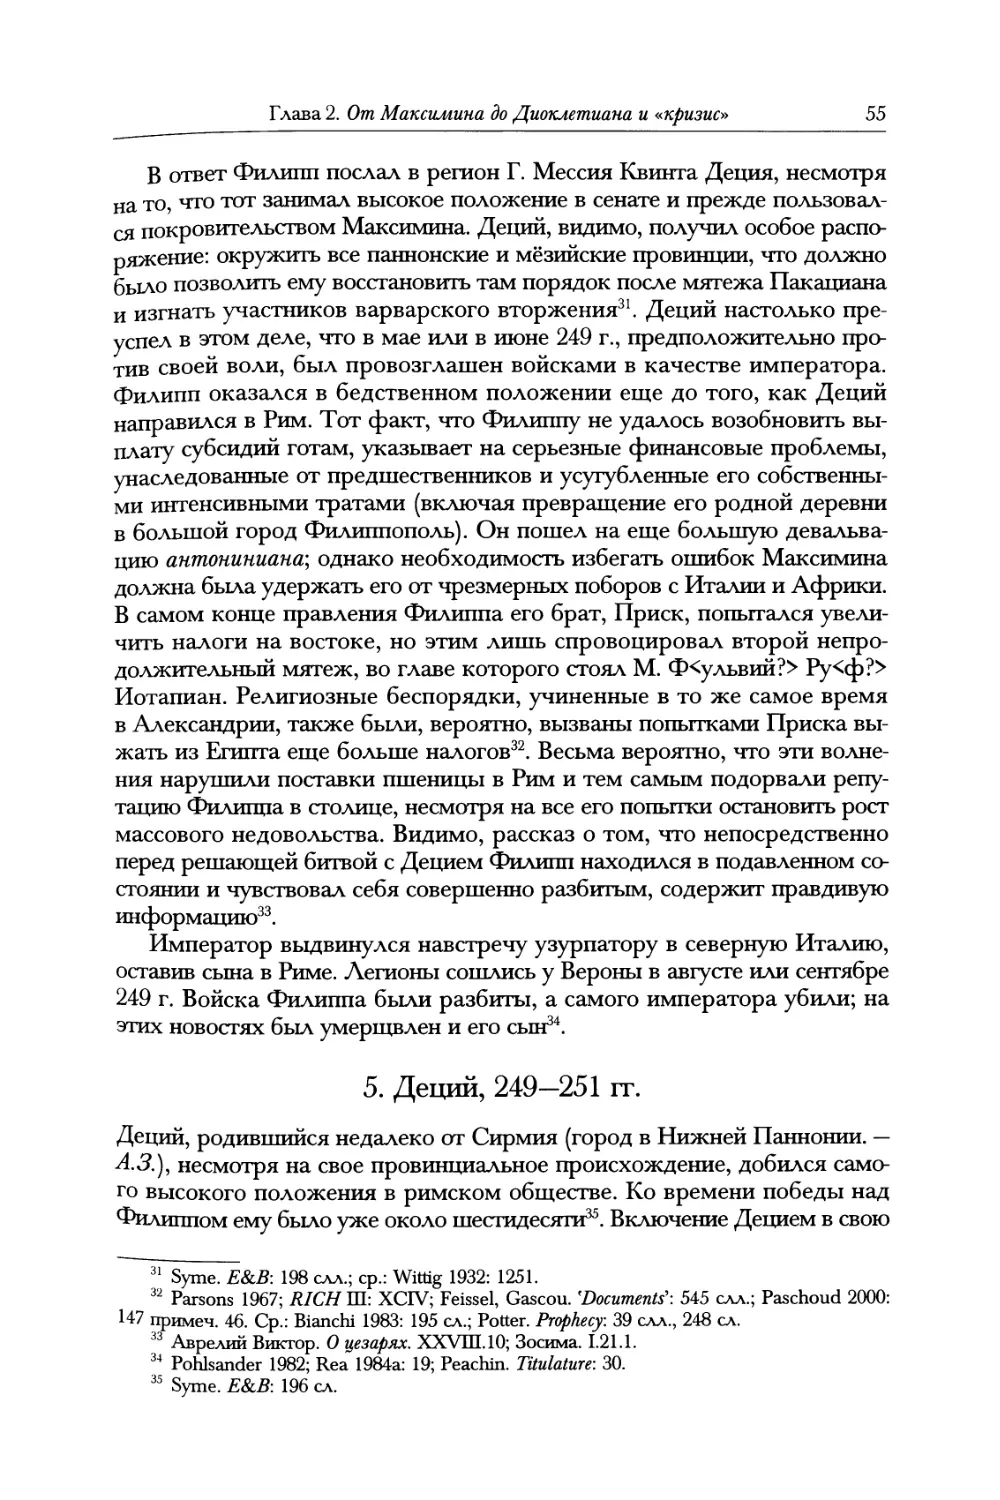 5. Деций, 249—251 гг.